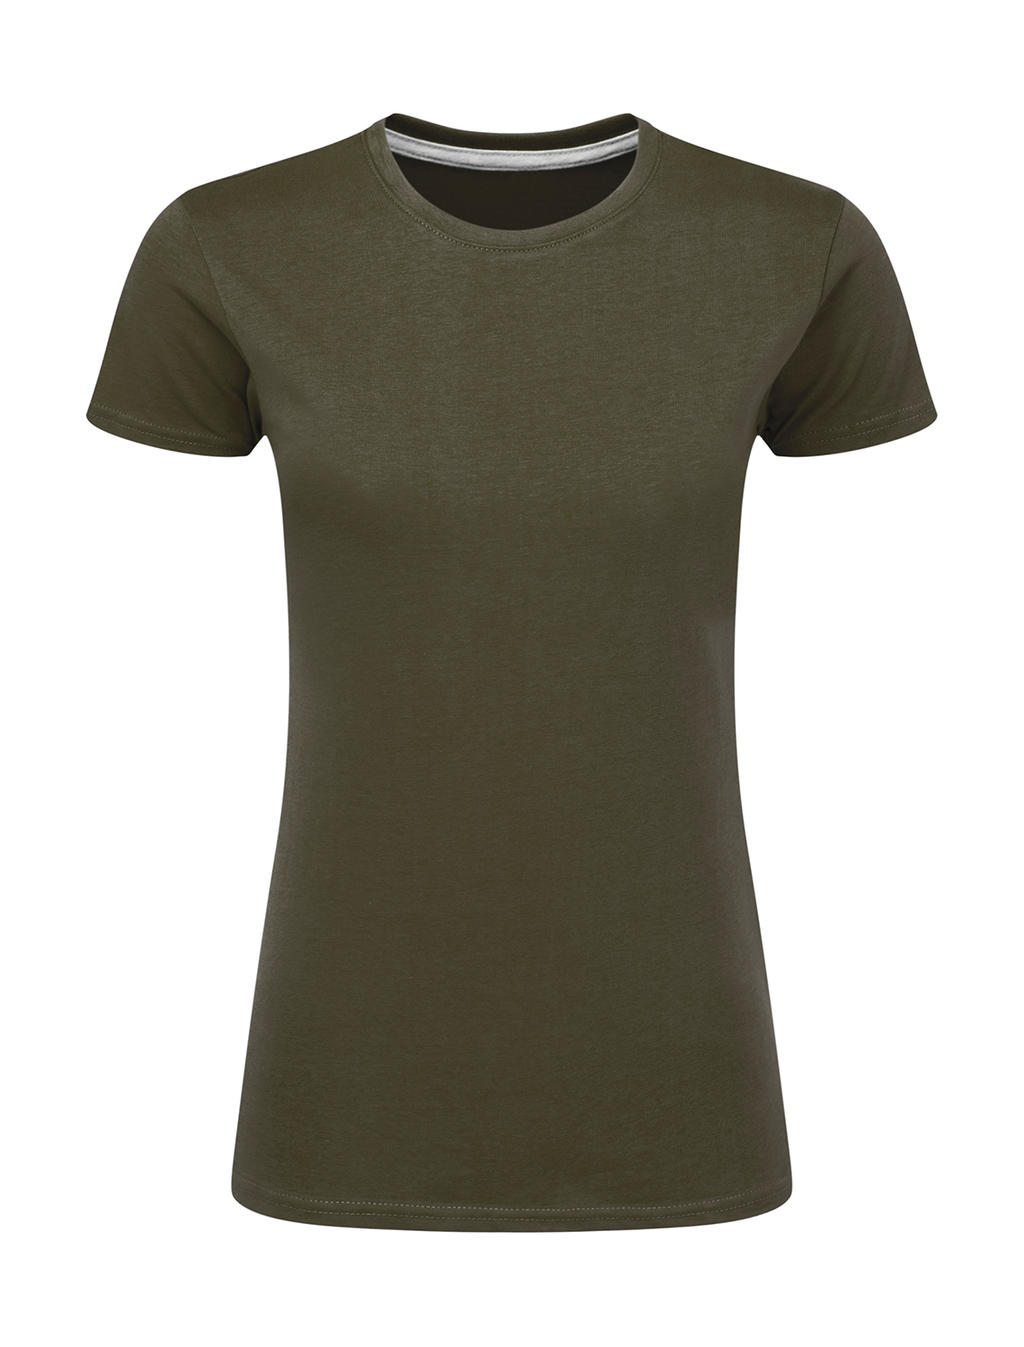 Dokonale potlačiteľné dámske tričko bez štítku - military green